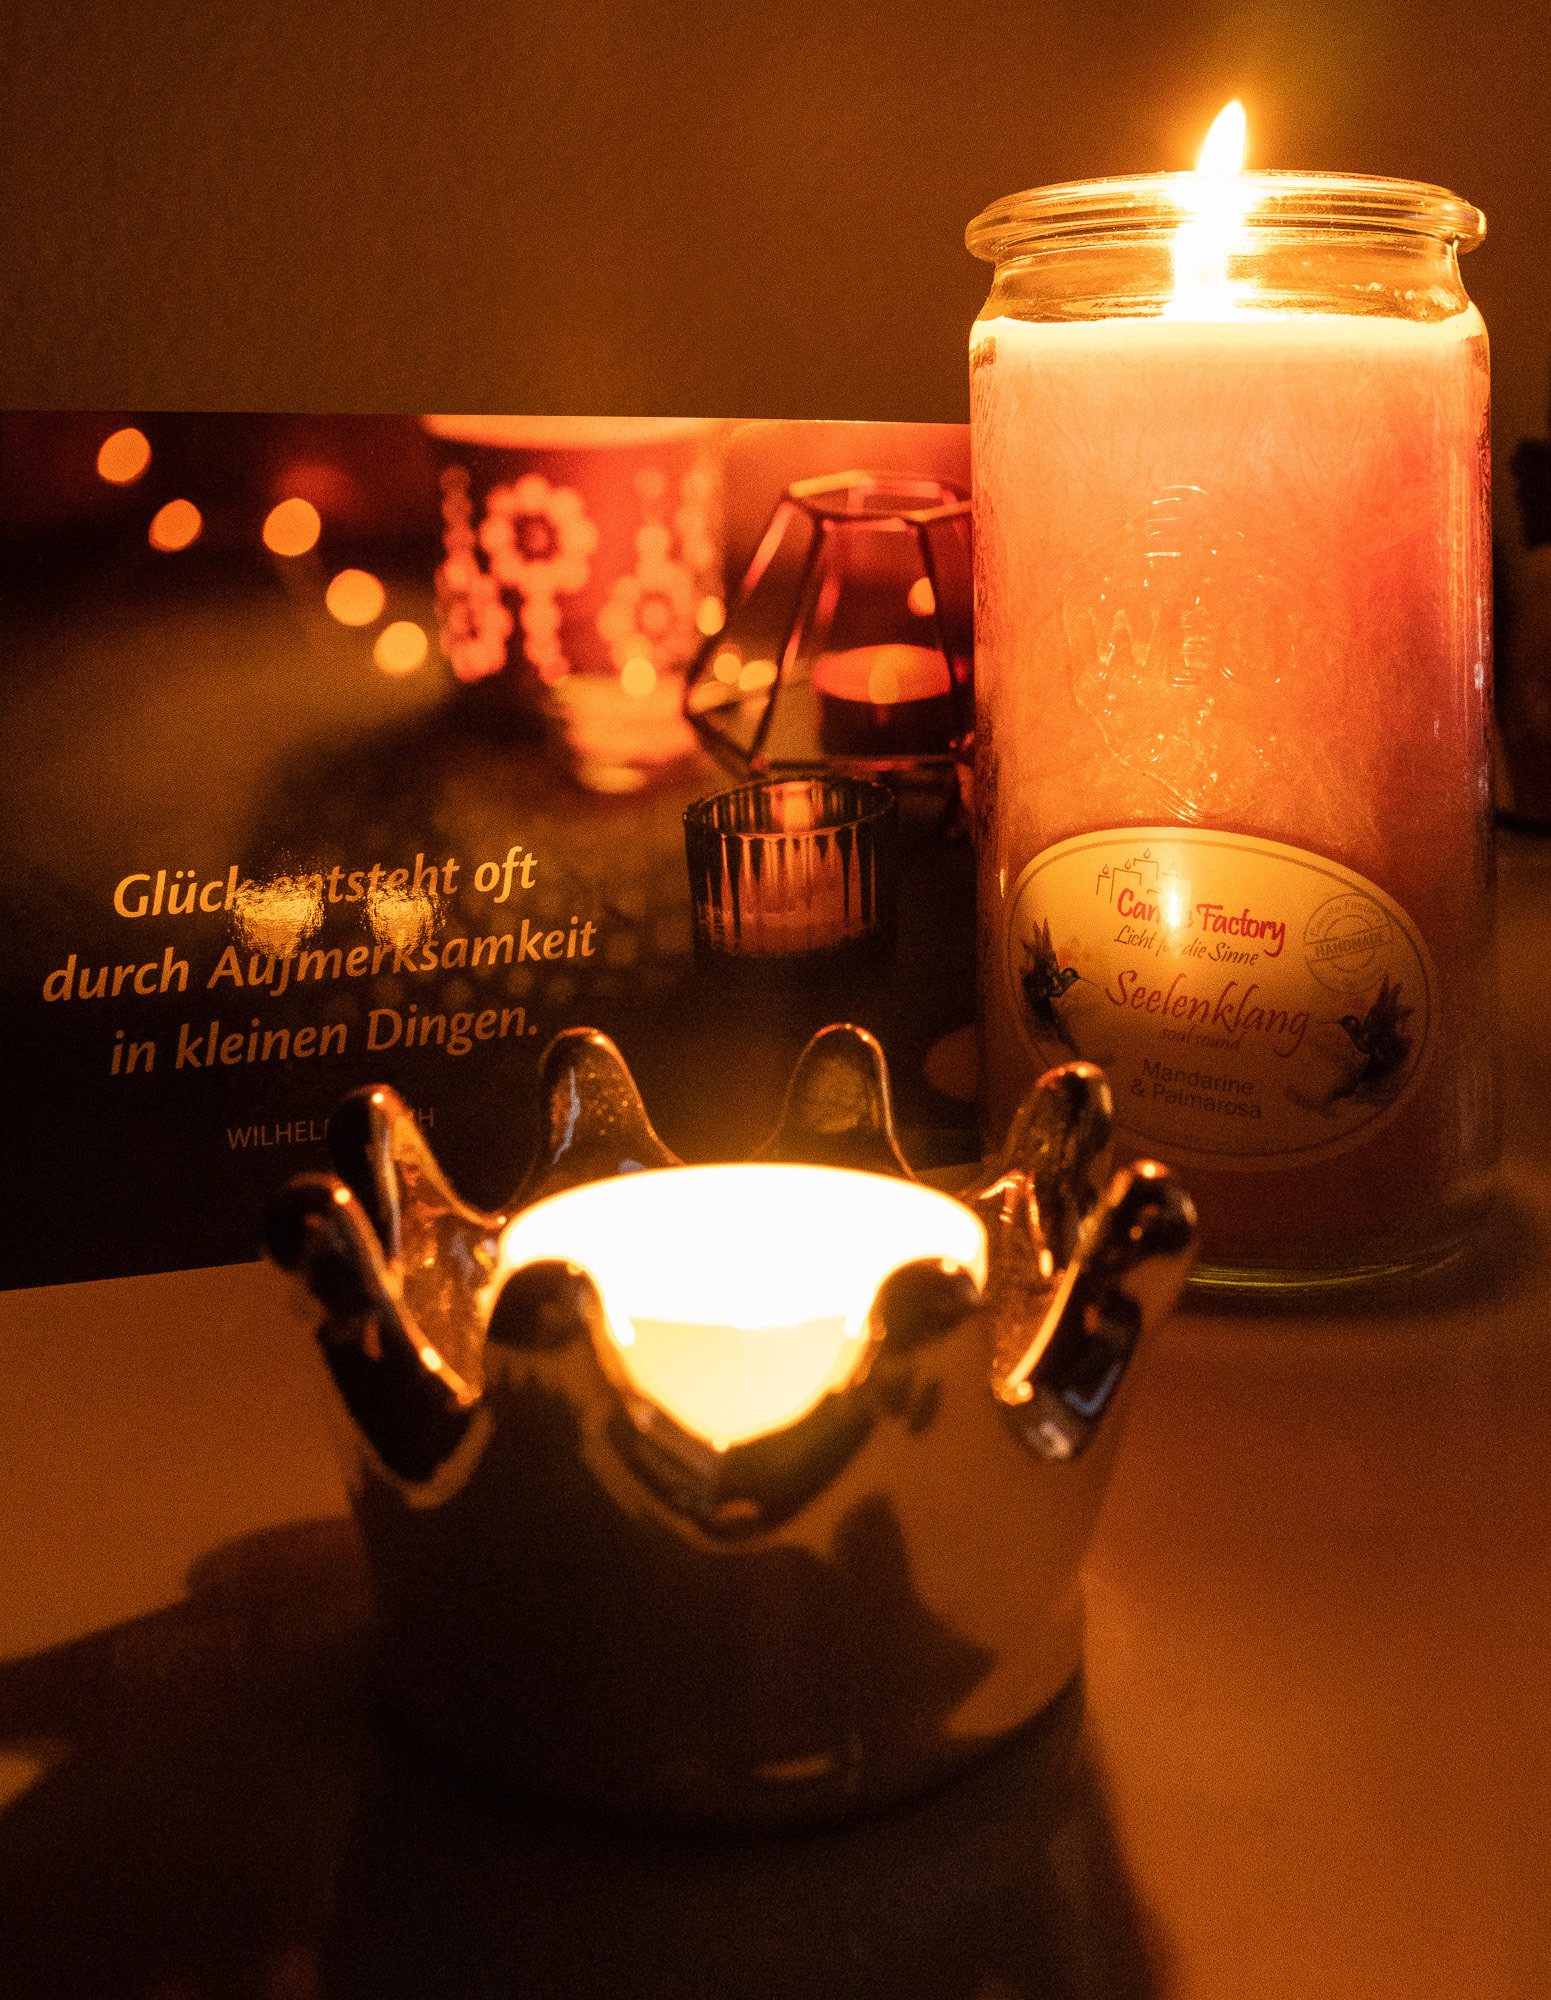 Brennende Kerze und ein Teelicht in einem kronenförmigen Halter neben einer Postkarte, auf der ebenfalls Kerzen abgebildet sind sowie das Zitat "Glück entsteht oft durch Aufmerksamkeit in kleinen Dingen." von Wilhelm Busch